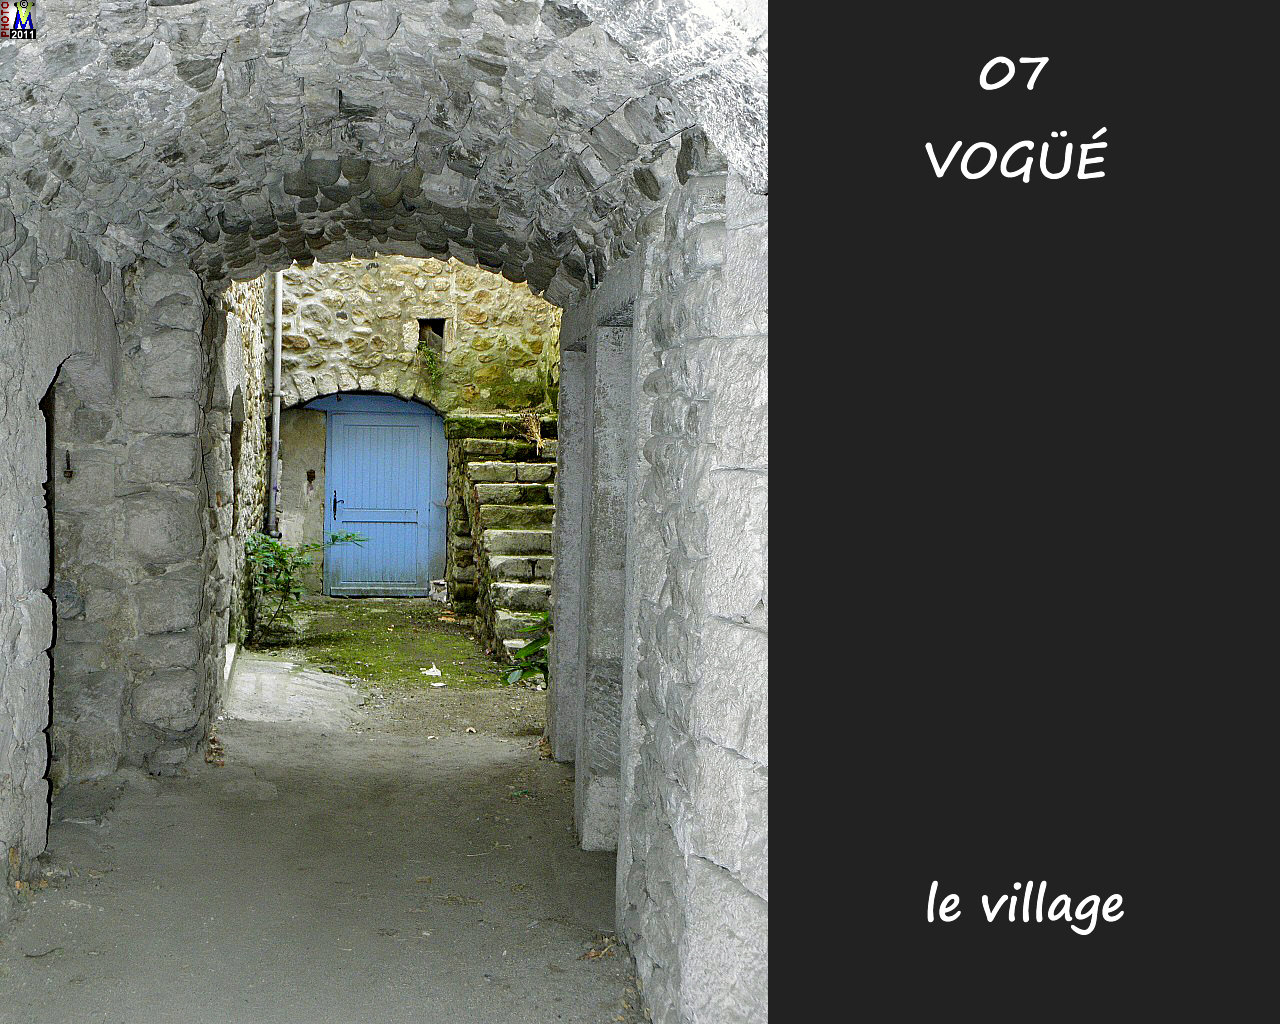 07VOGUE_village_156.jpg